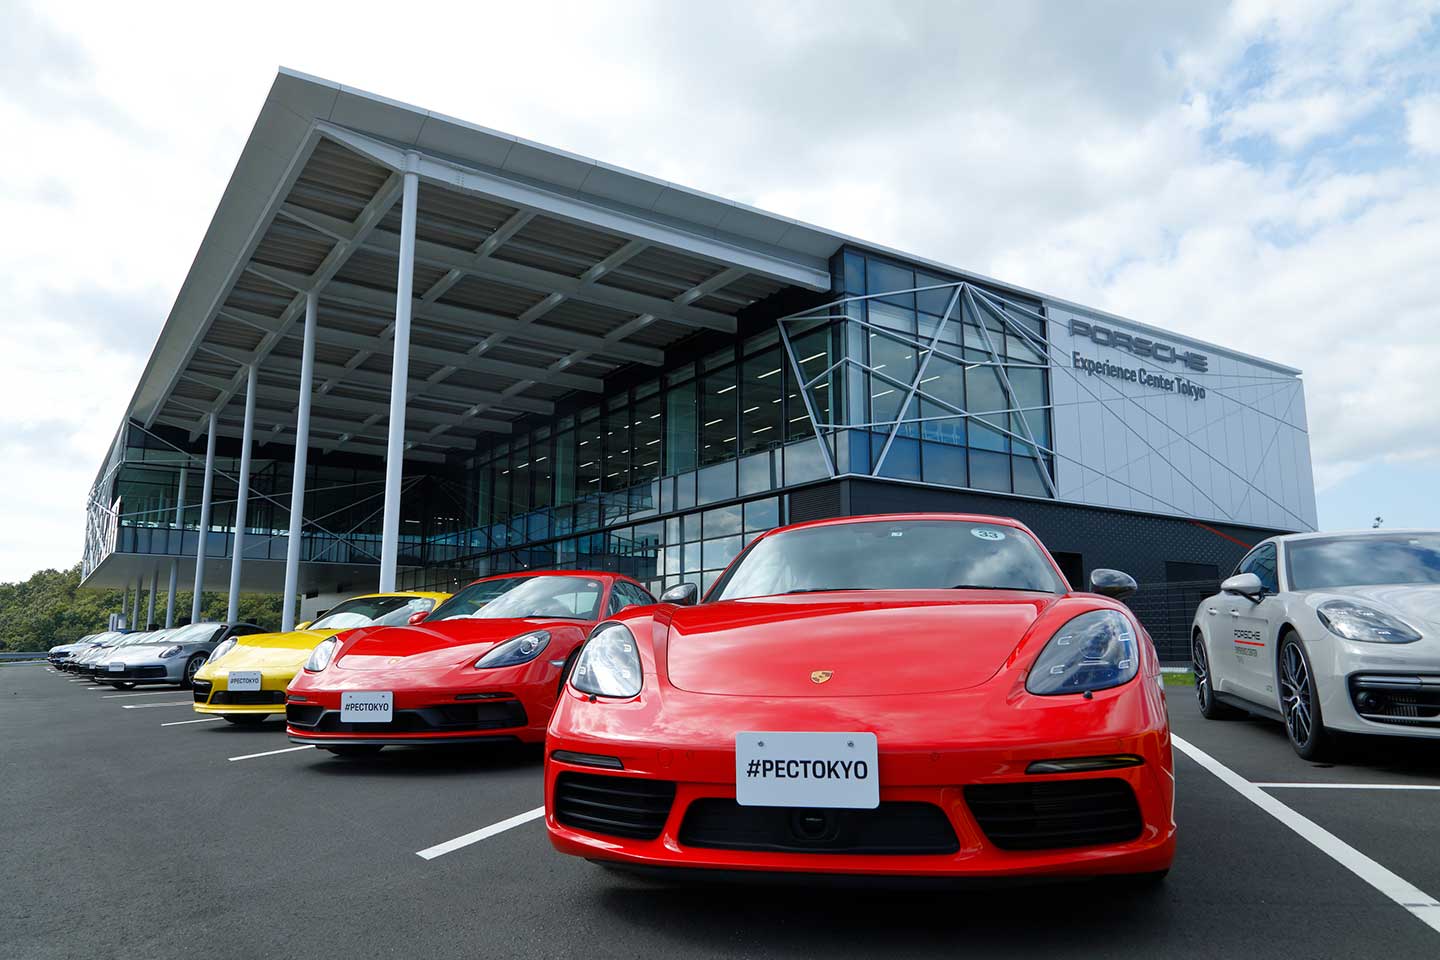 Porsche Experience Center Tokyo